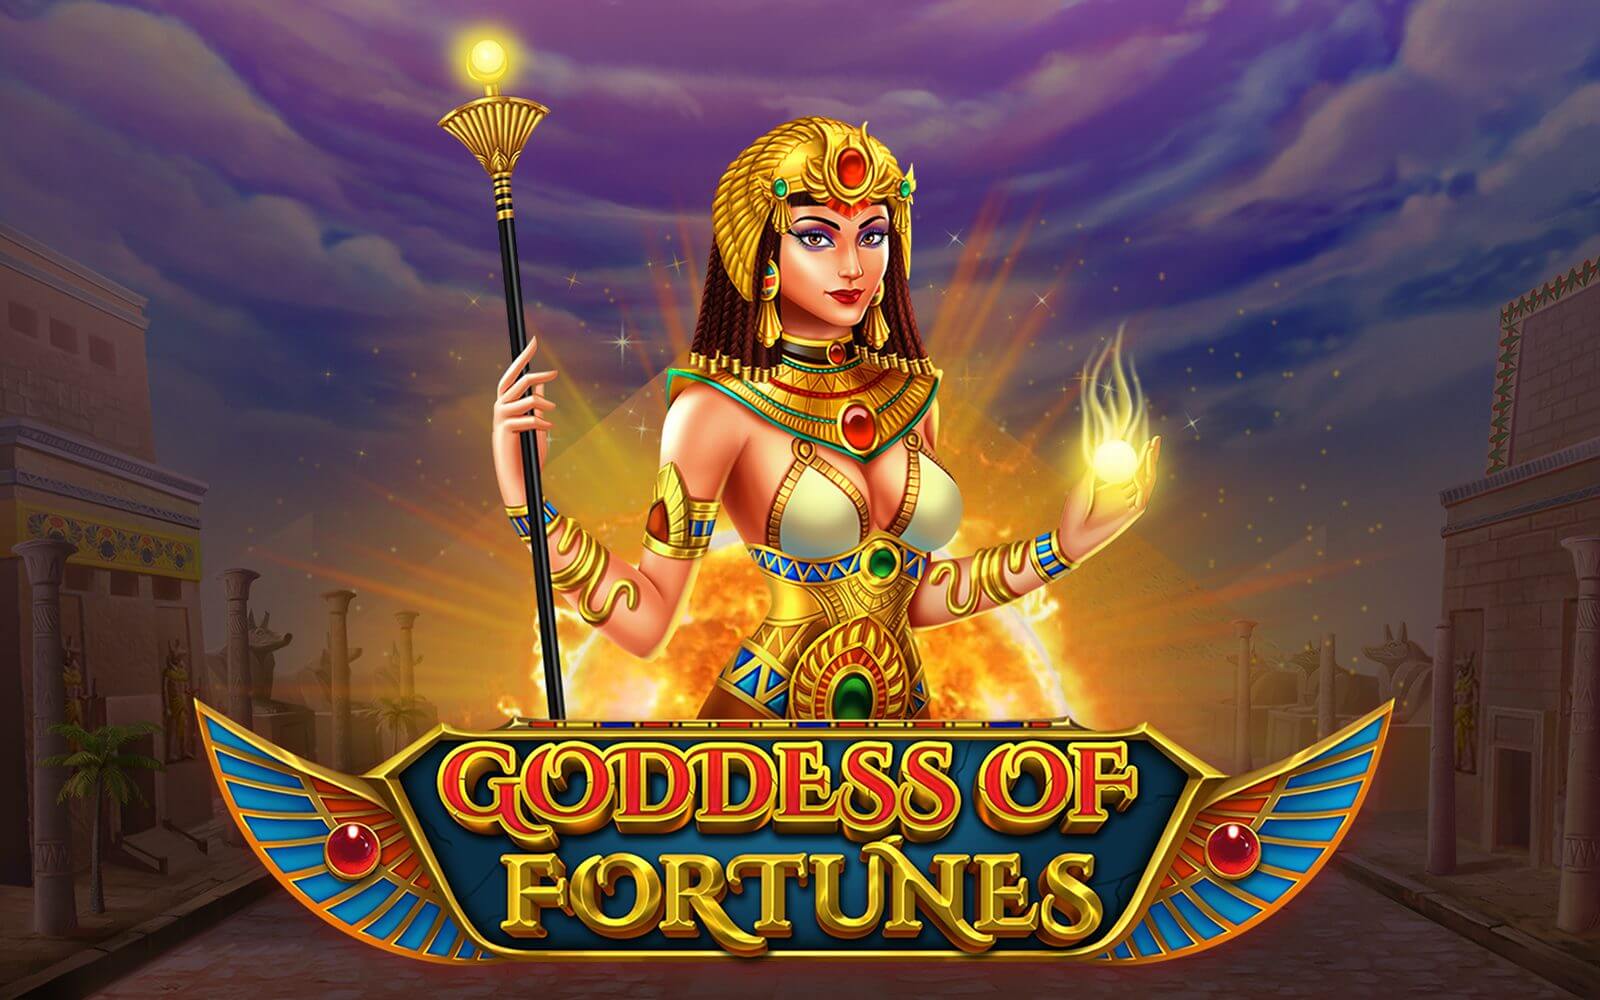 Goddess of Fortune slot